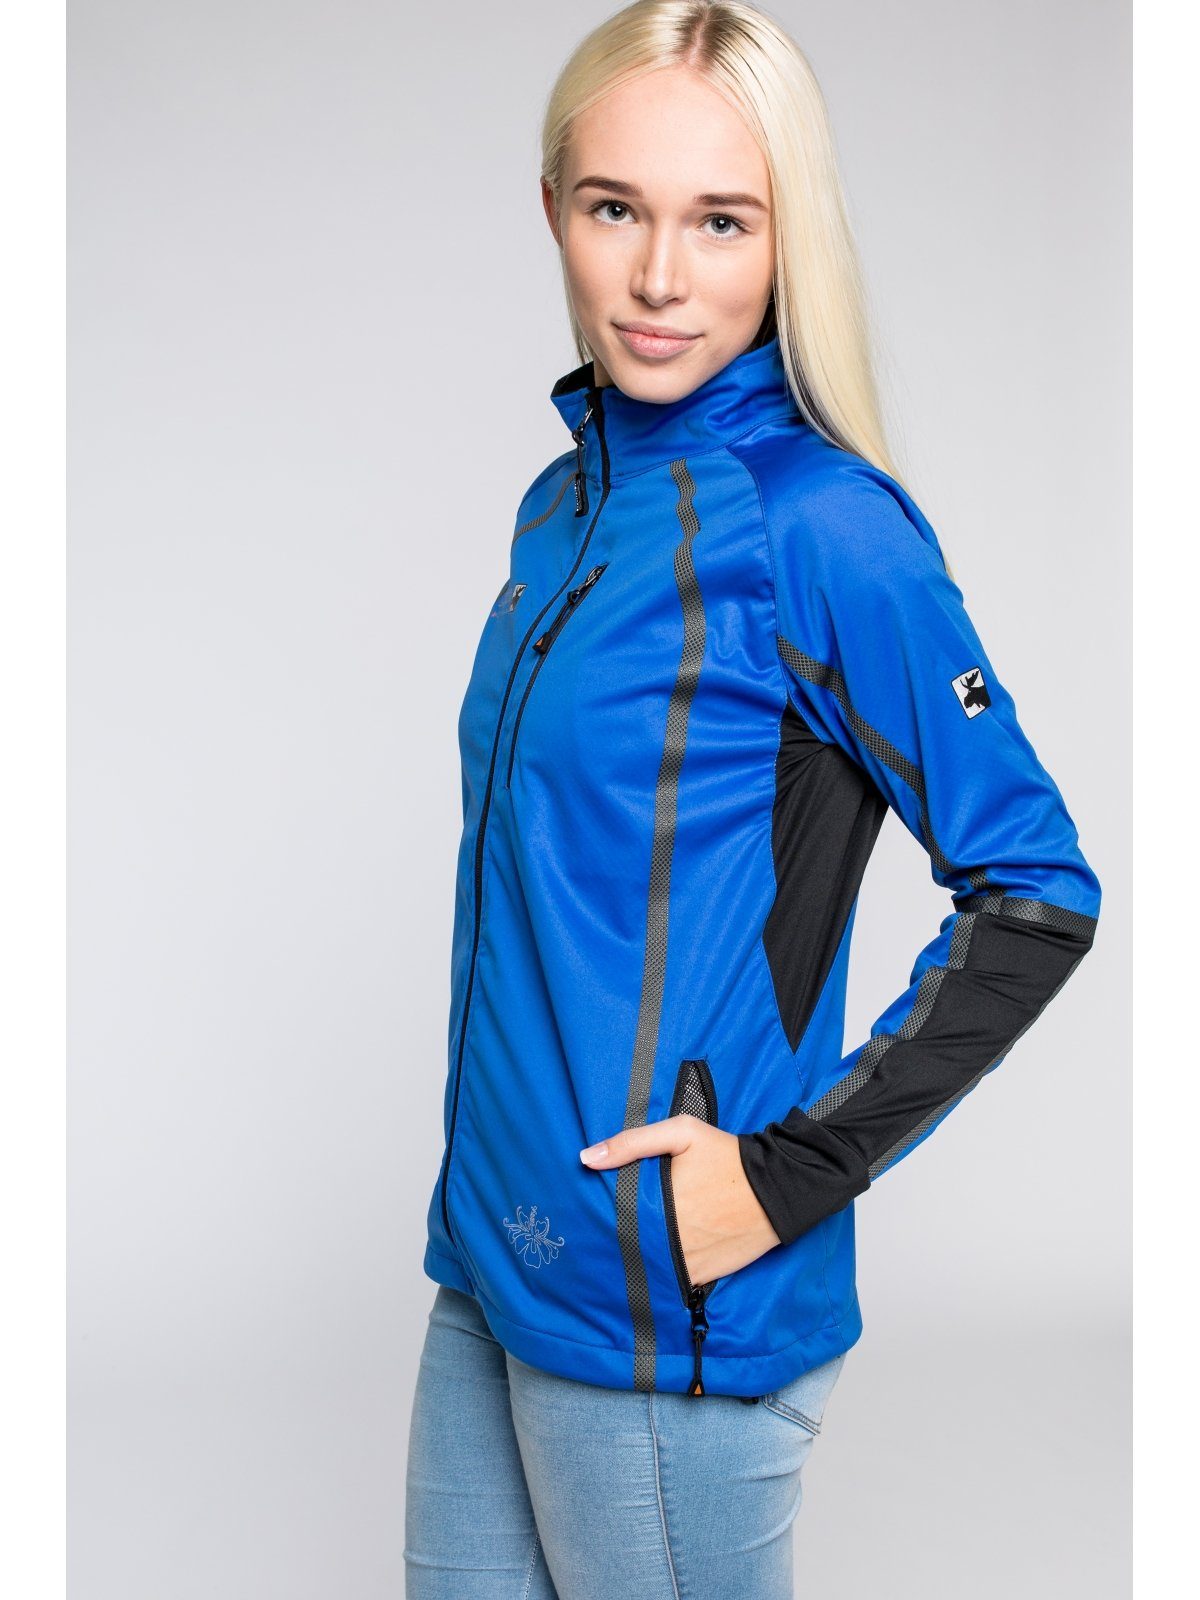 DEPROC Active Softshelljacke THORSBY Women Midlayer auch in Großen Größen erhältlich blau